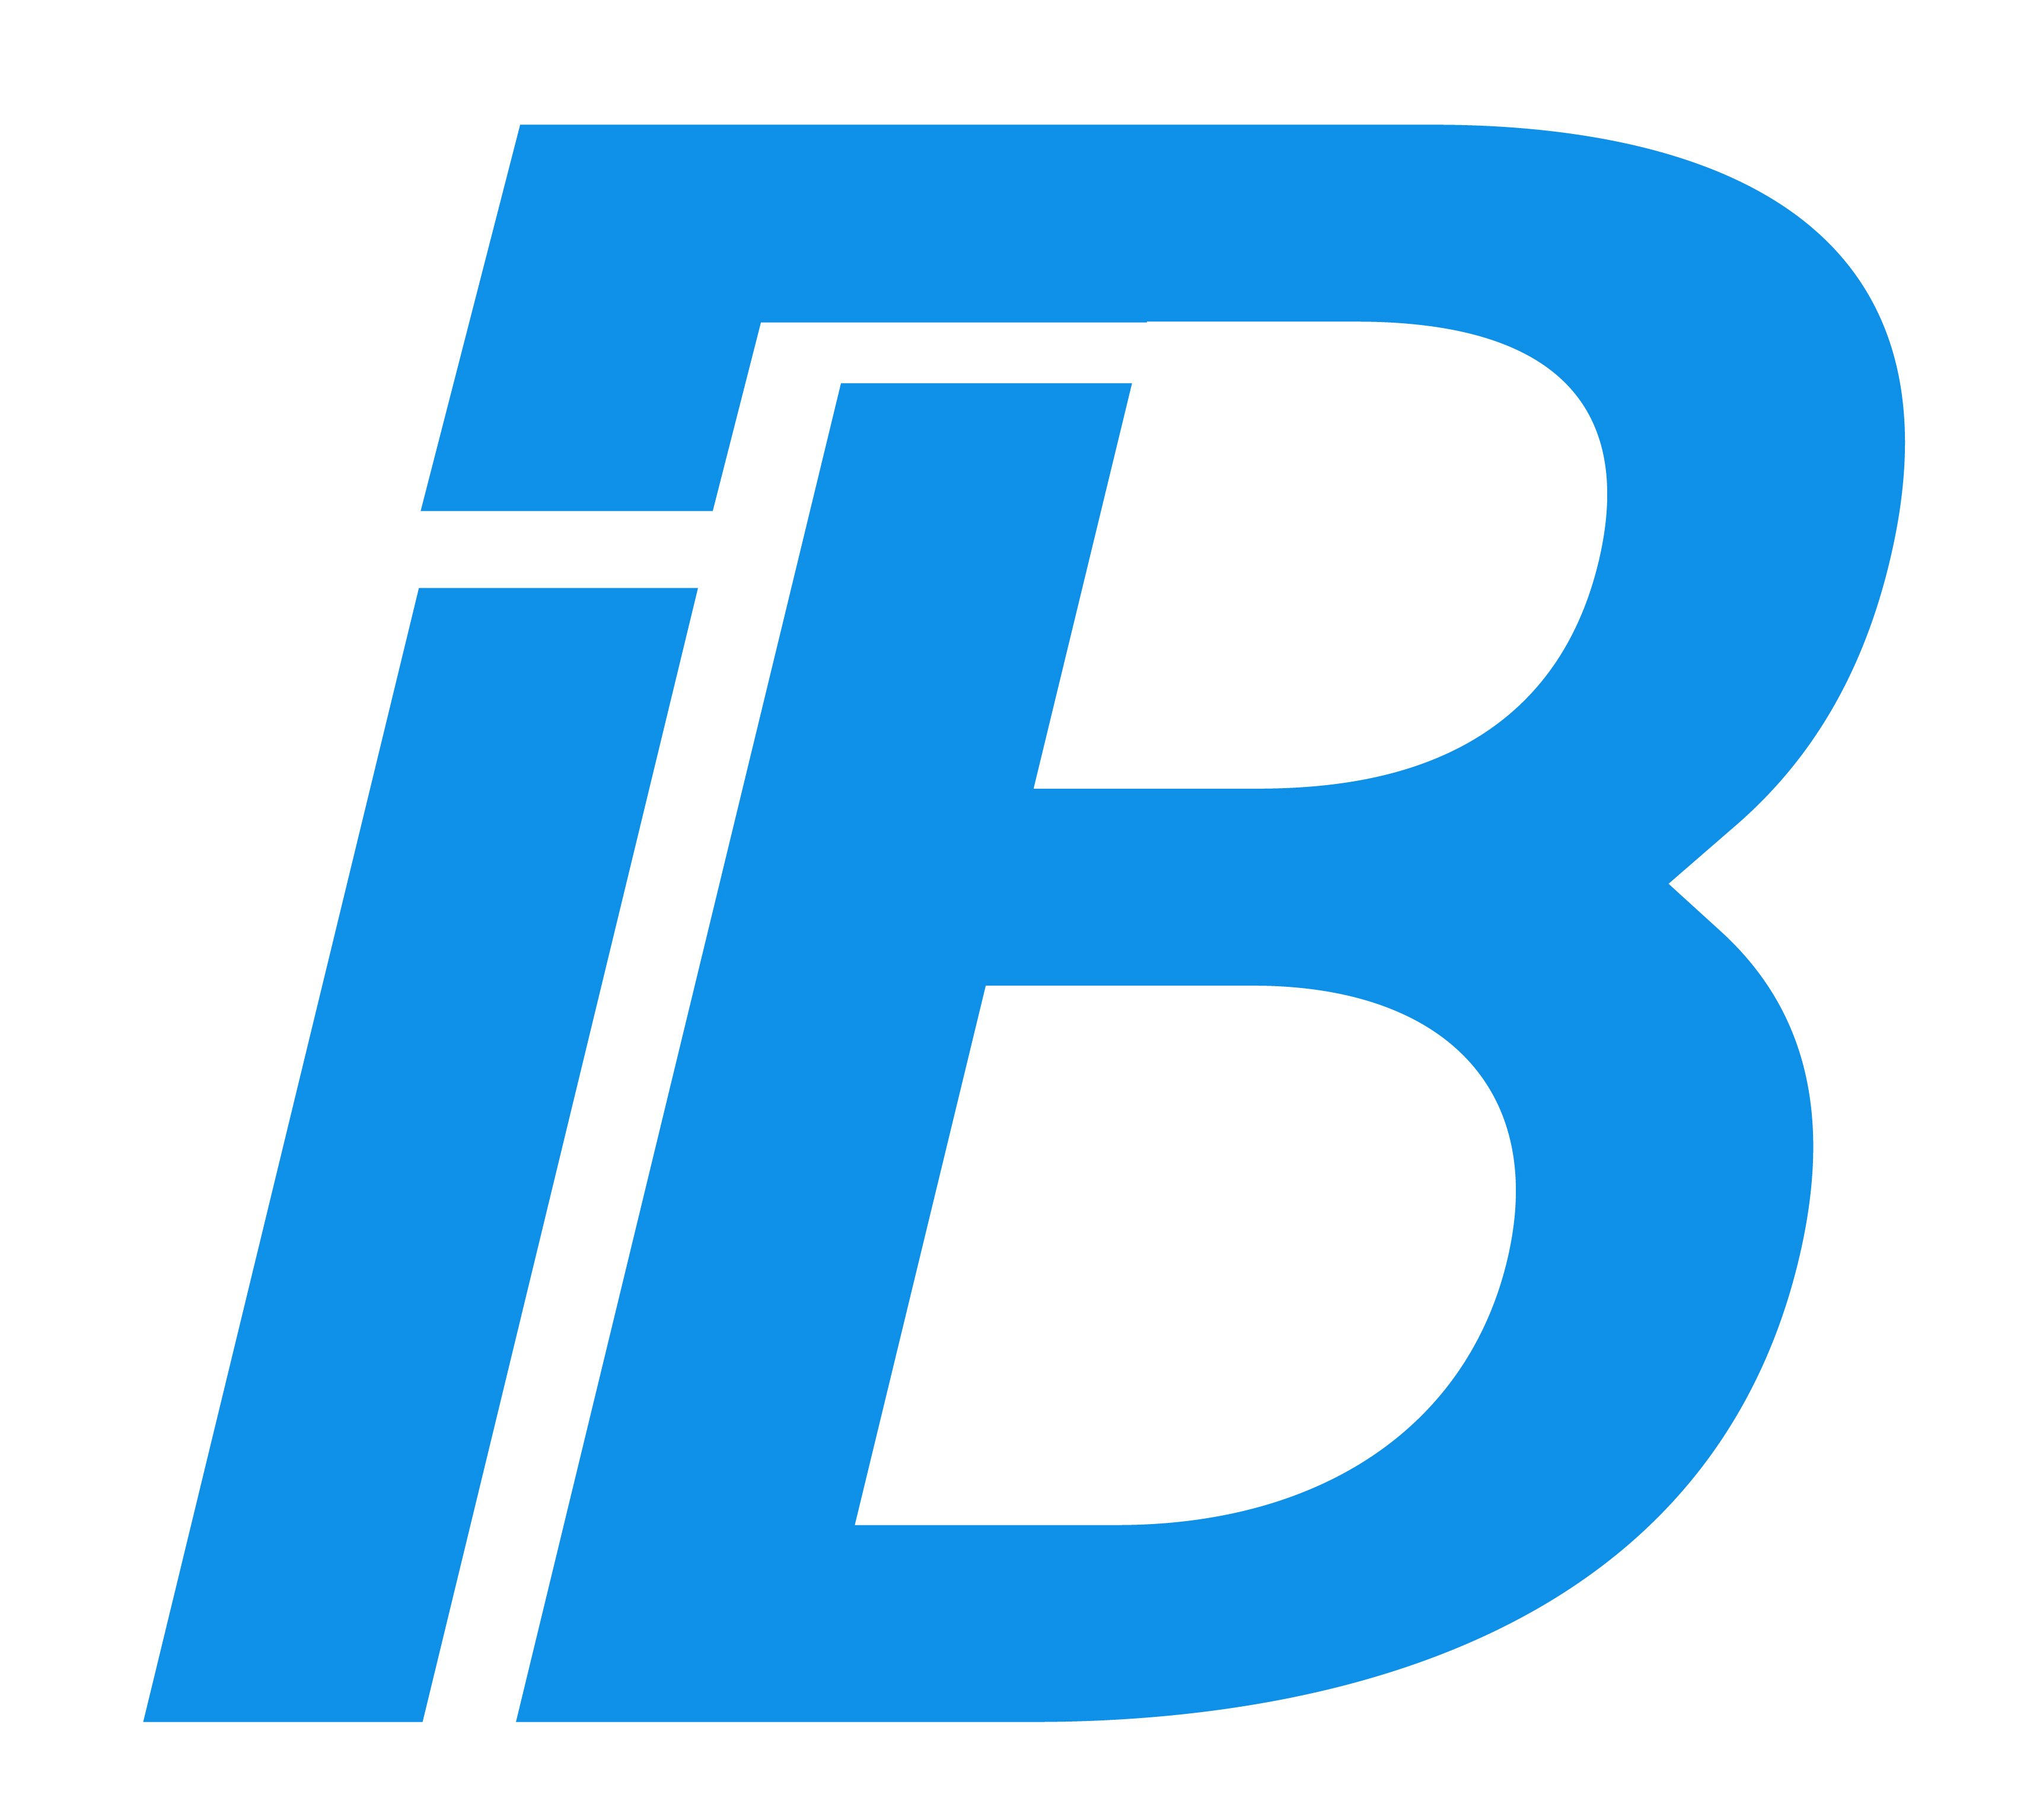 IB